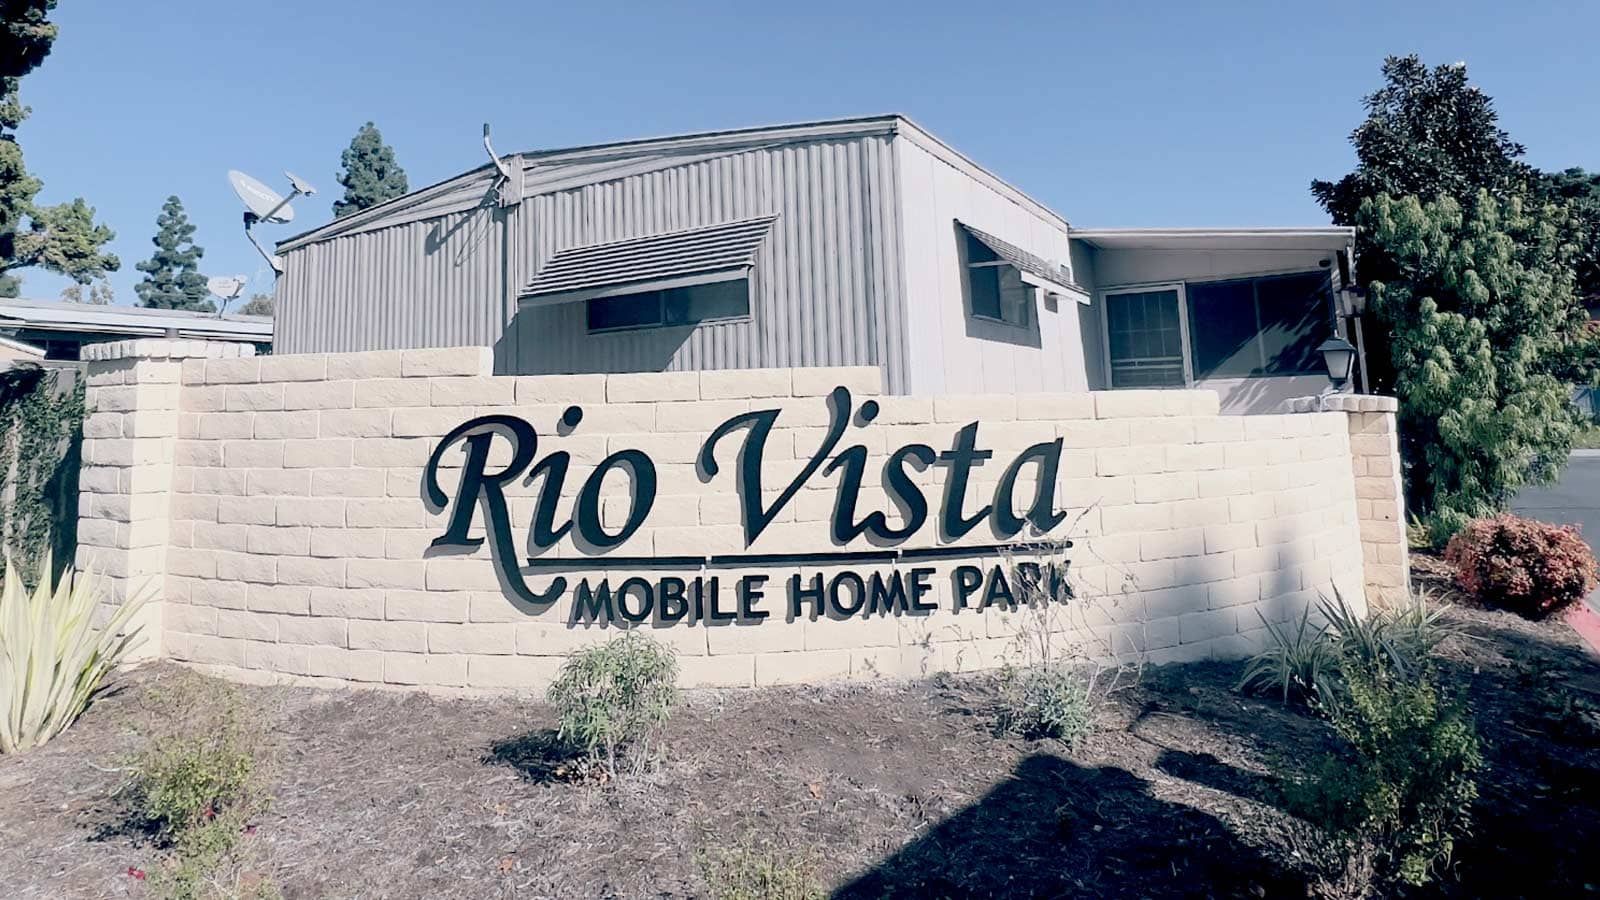 Rio Vista Mobile Home Parks 3D sign made of aluminum